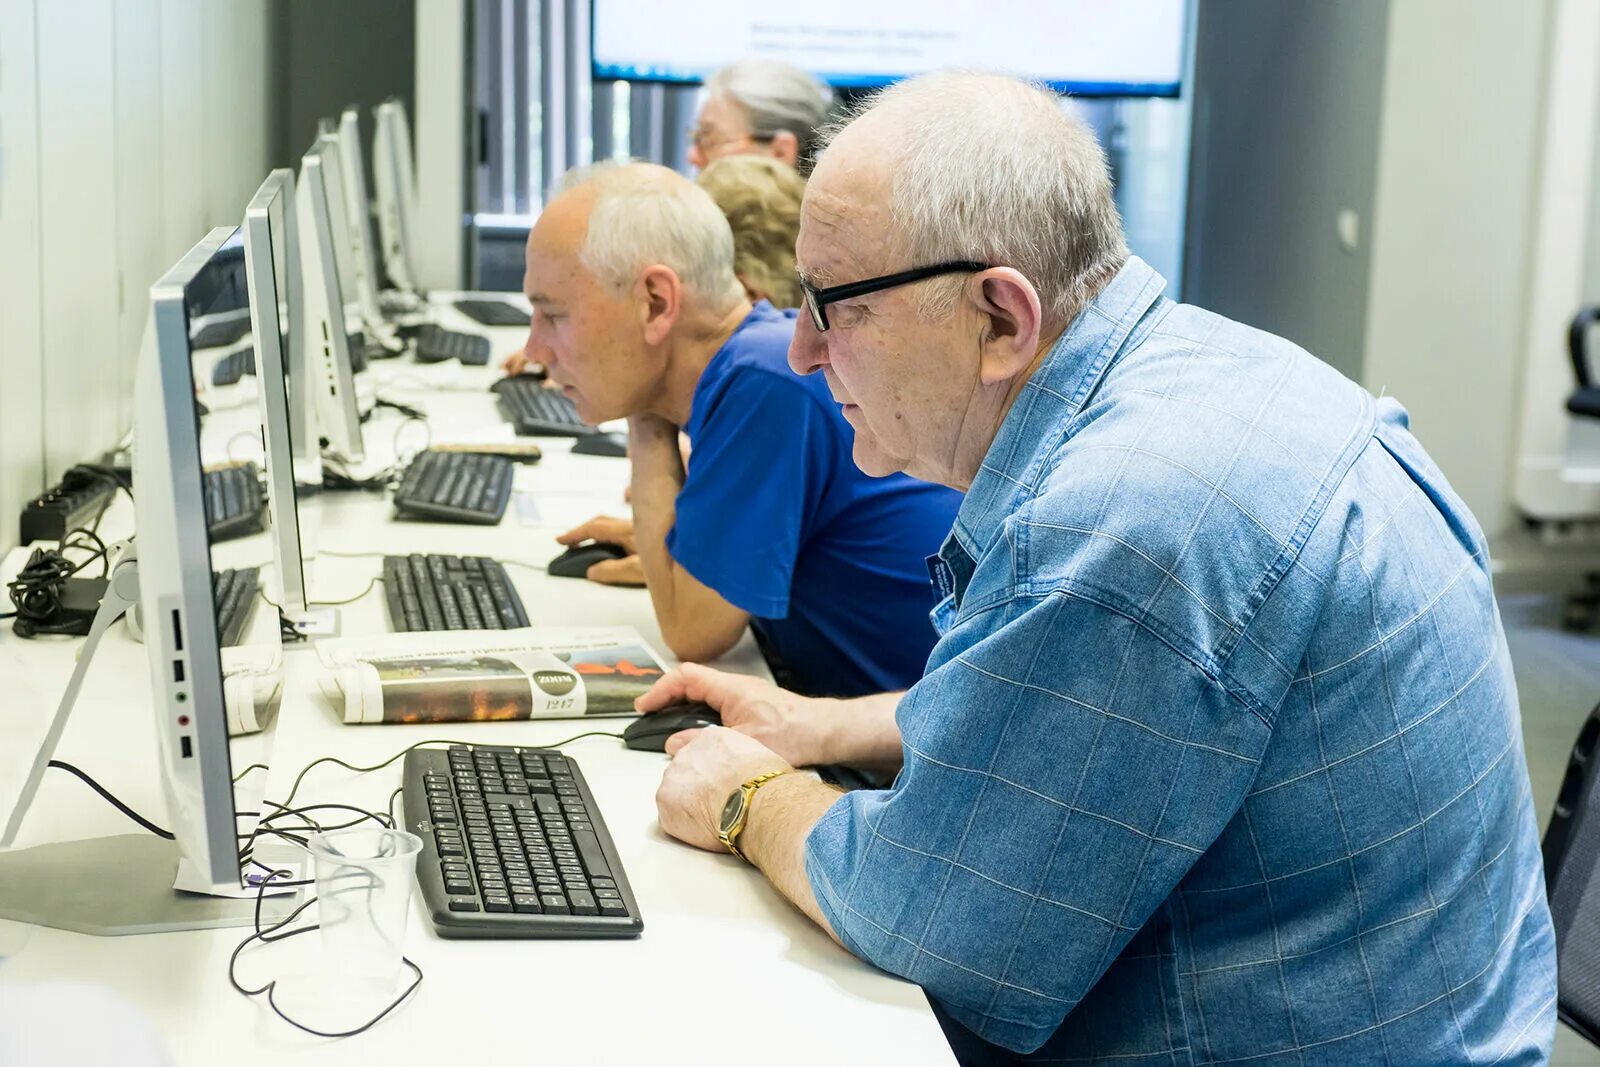 Работающие пенсионеры москвы. Работающие пенсионеры. Пенсионеры и компьютер. Предпенсионный Возраст фото. Компьютерная грамотность для пенсионеров.